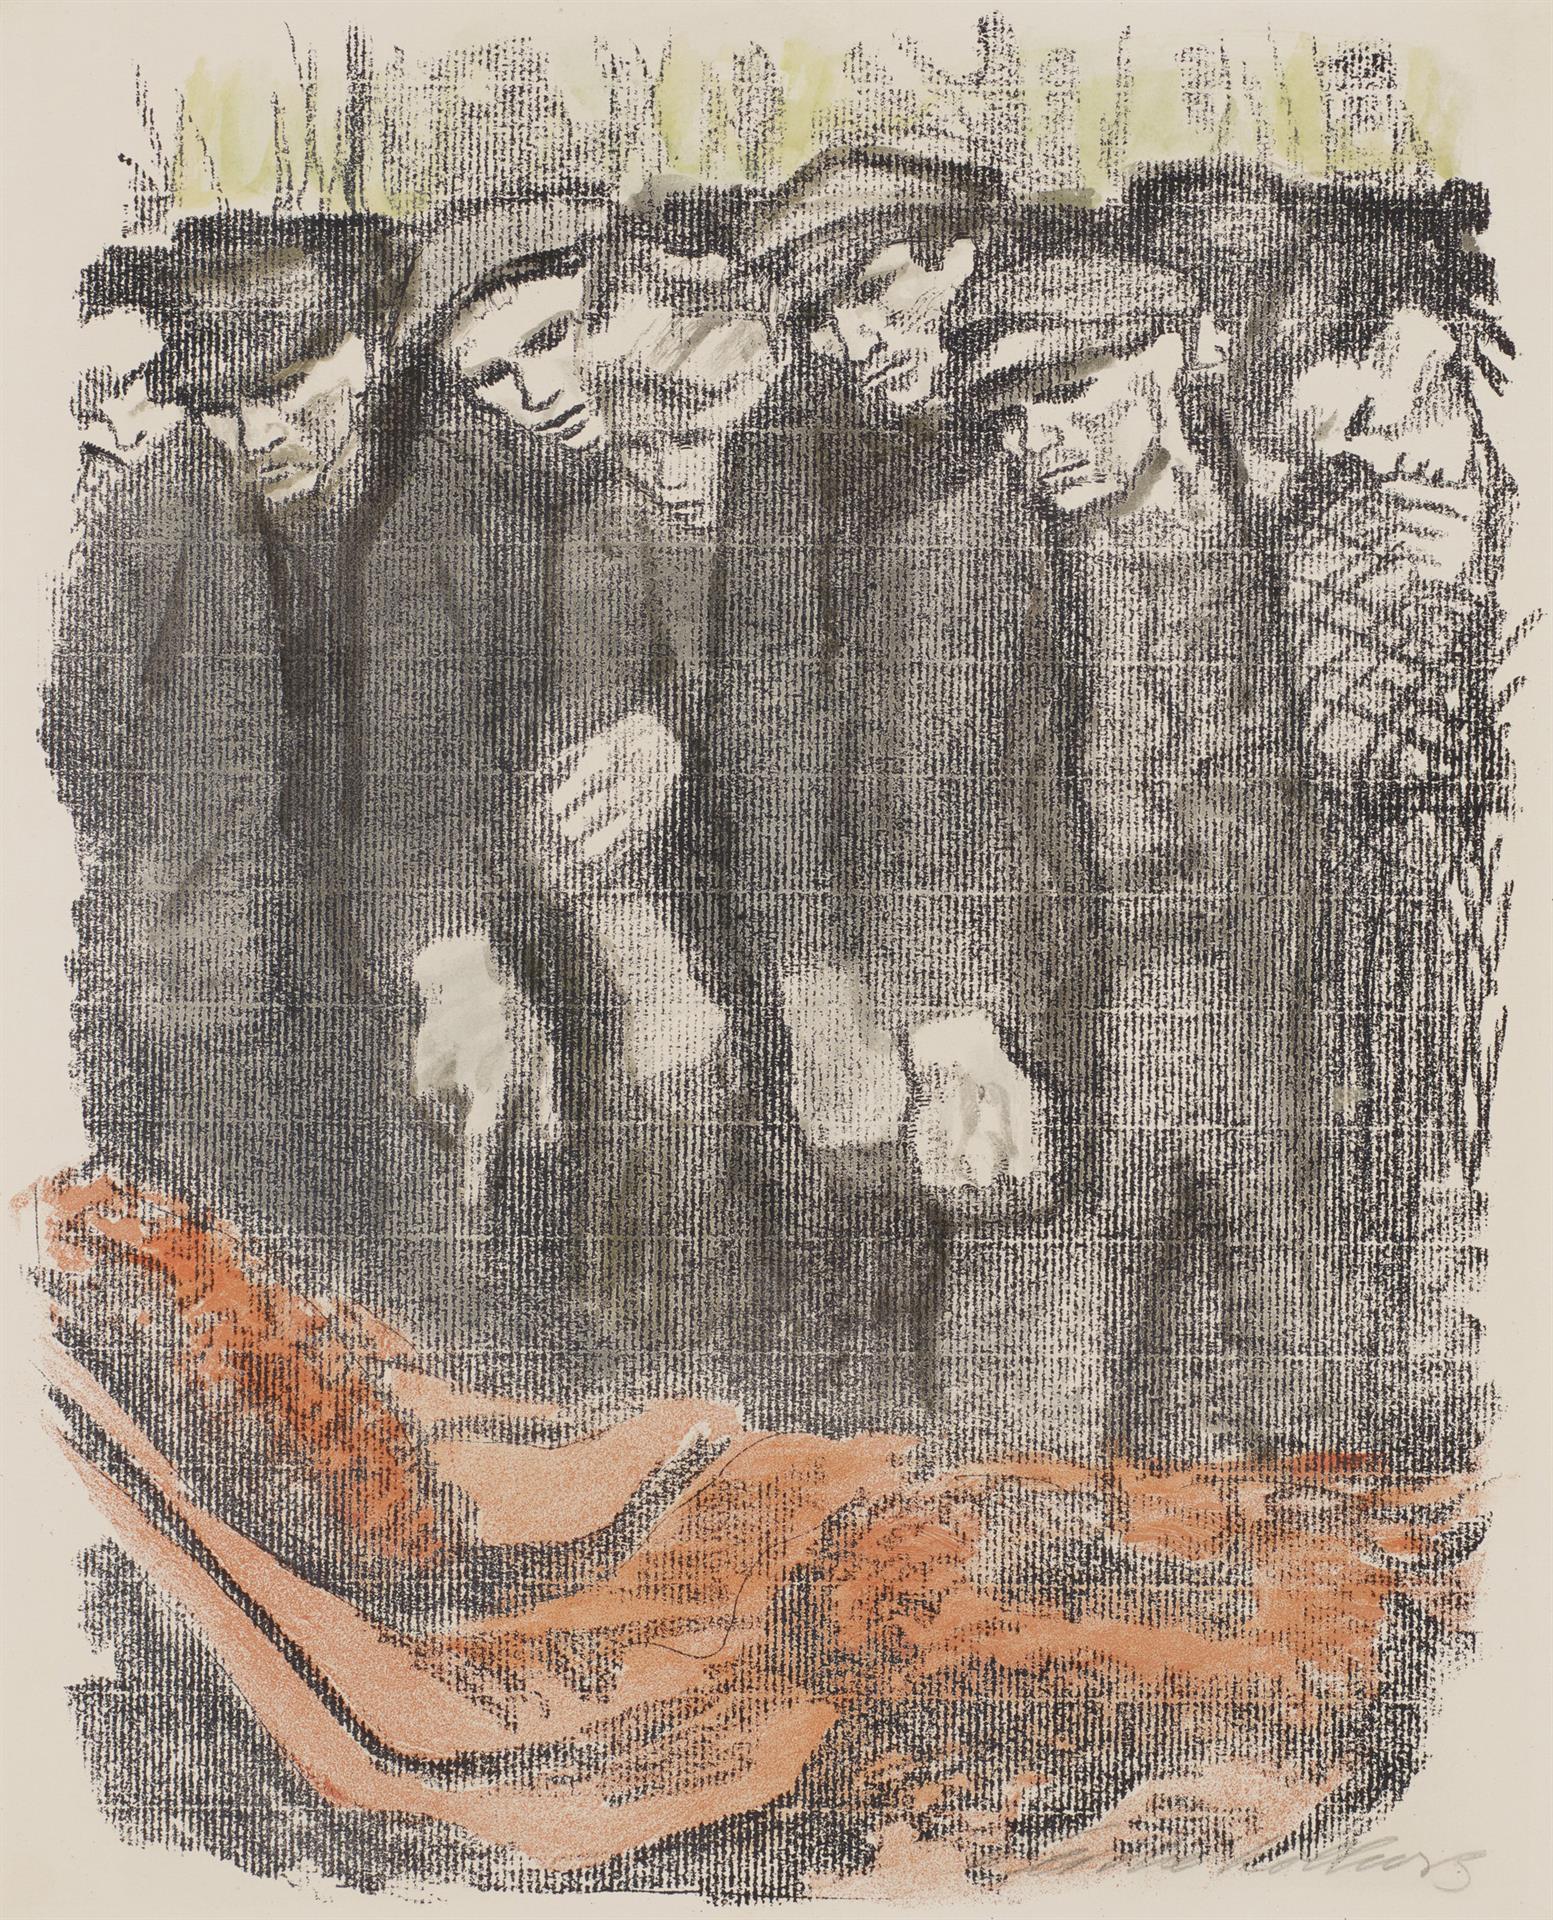 Käthe Kollwitz, Märzfriedhof, Zweite Fassung, 1913, Kreidelithographie in zwei Farben (Umdruck von einer unbekannten Zeichnung auf geripptem Bütten), Kn 128